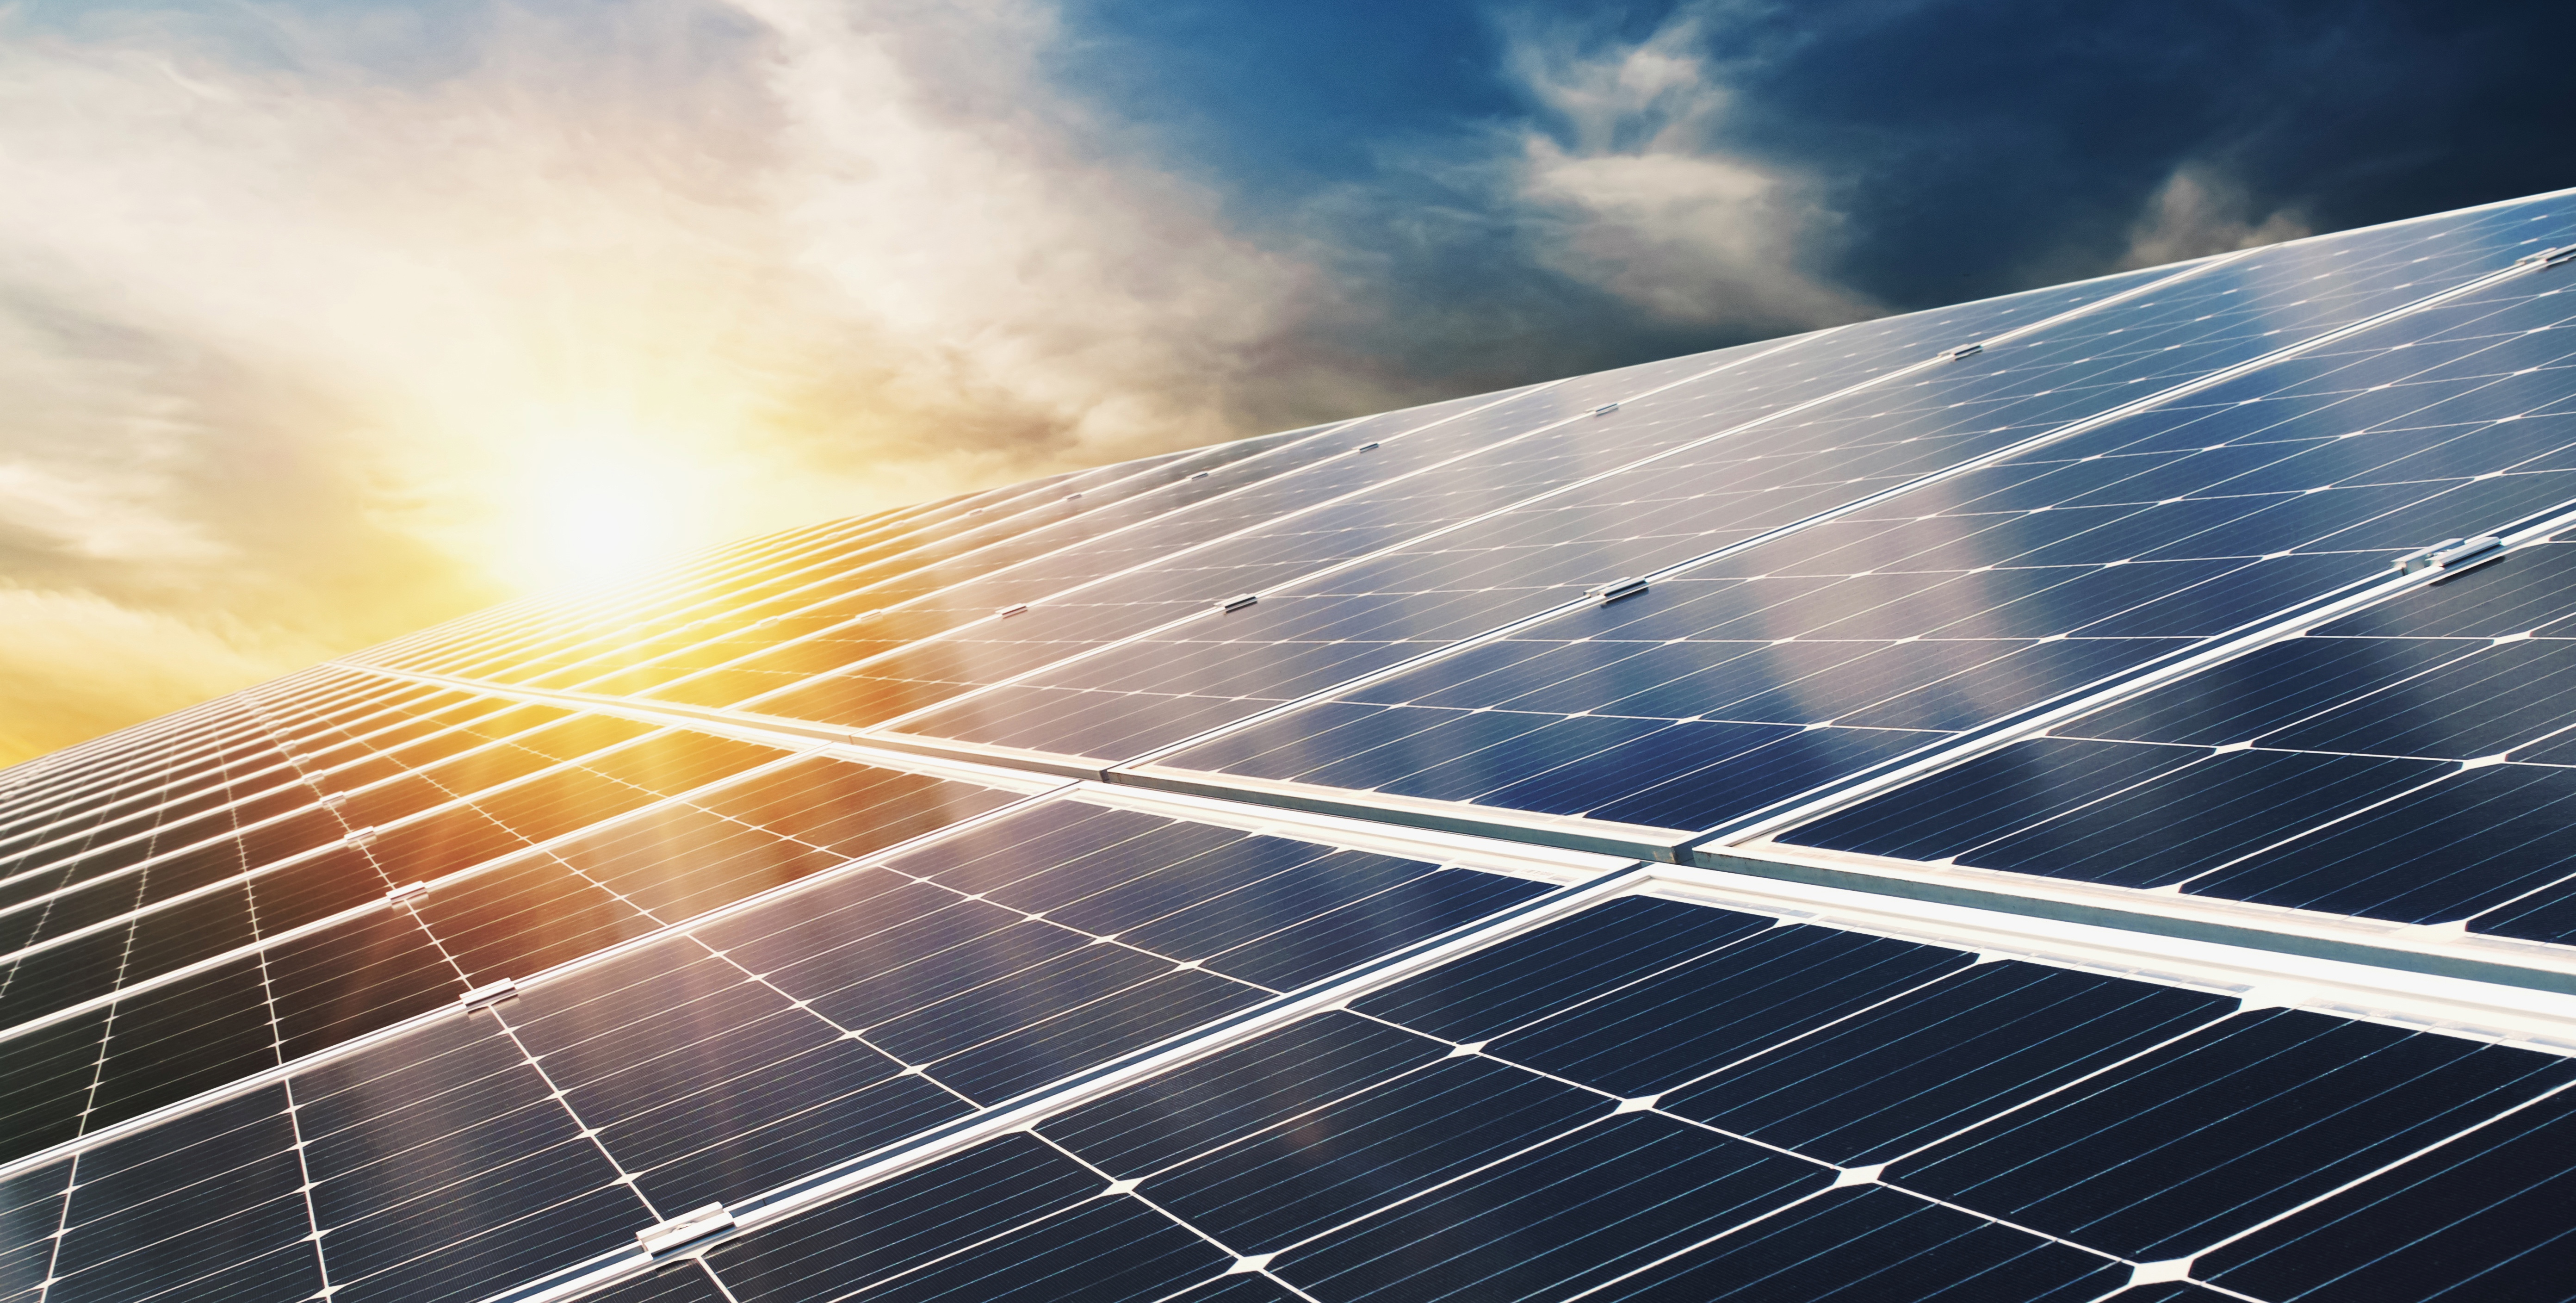 La cellule solaire tandem proposée par les chercheurs combine la technologie au silicium maîtrisée par les industriels avec la nouvelle technologie des pérovskites. © lovelyday12, Adobe Stock